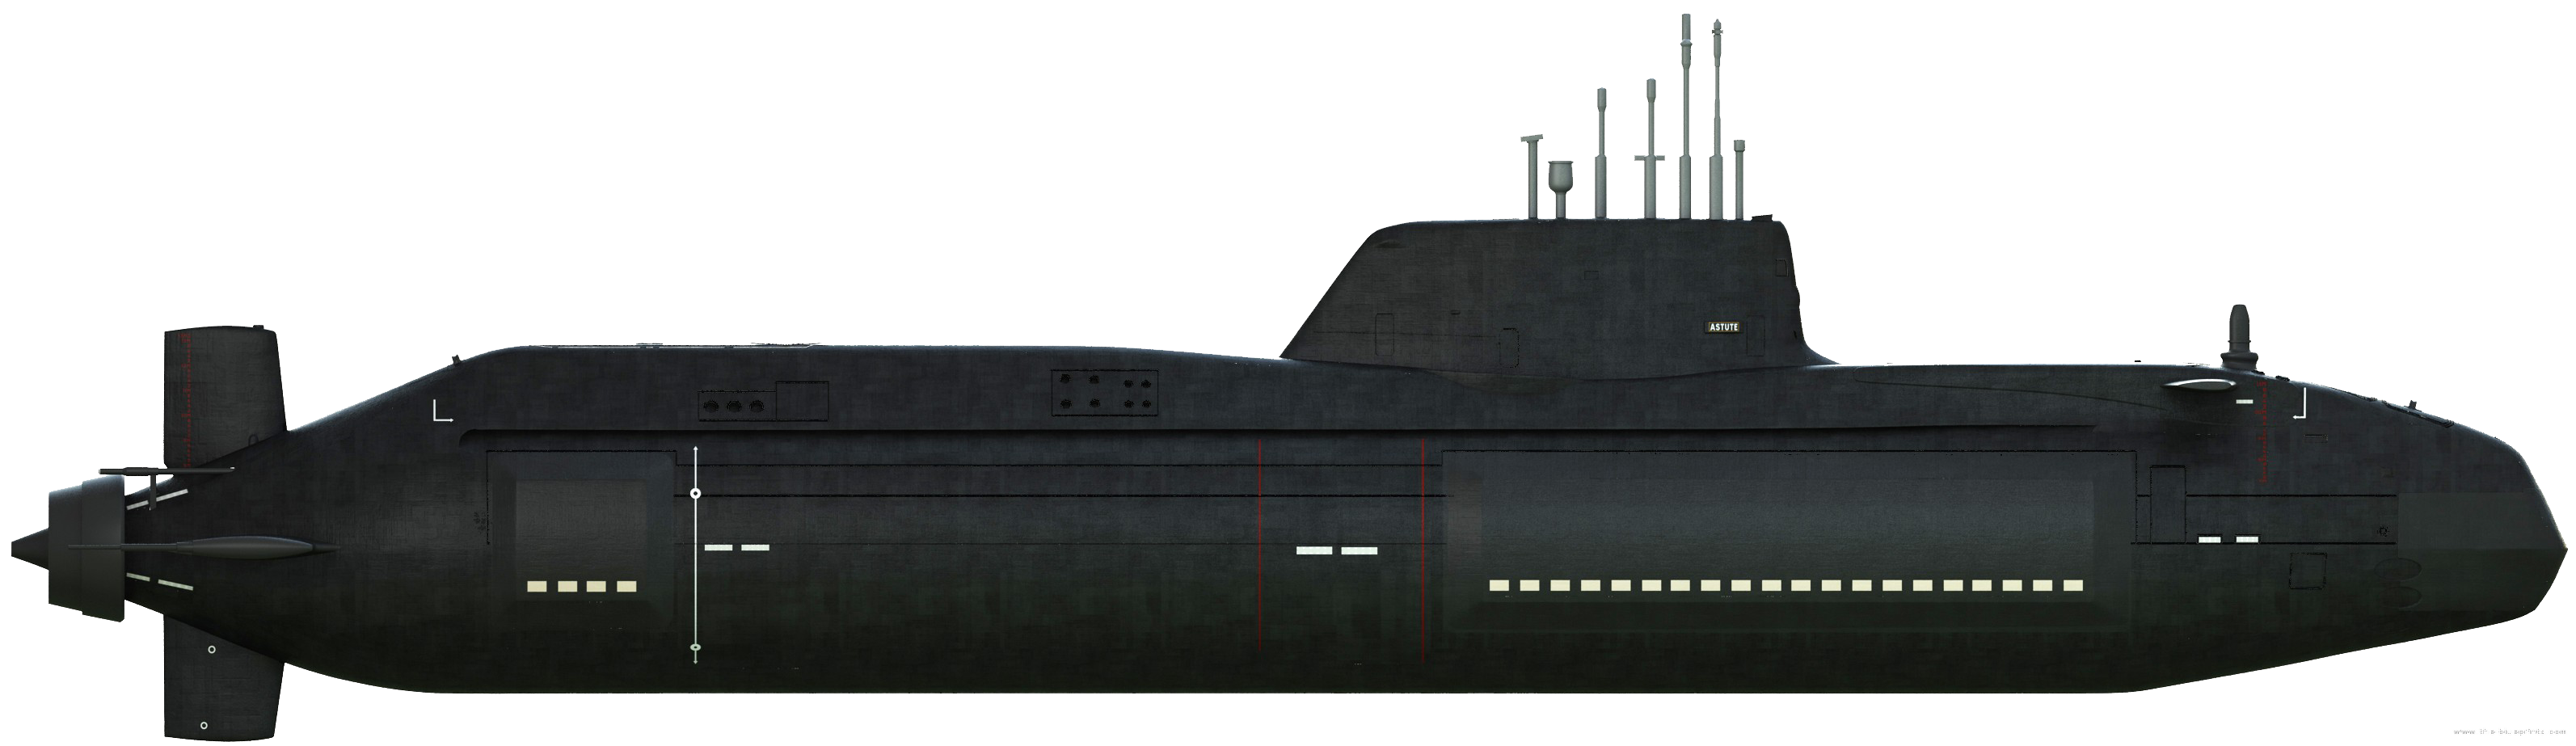 Submarine Transparent Images